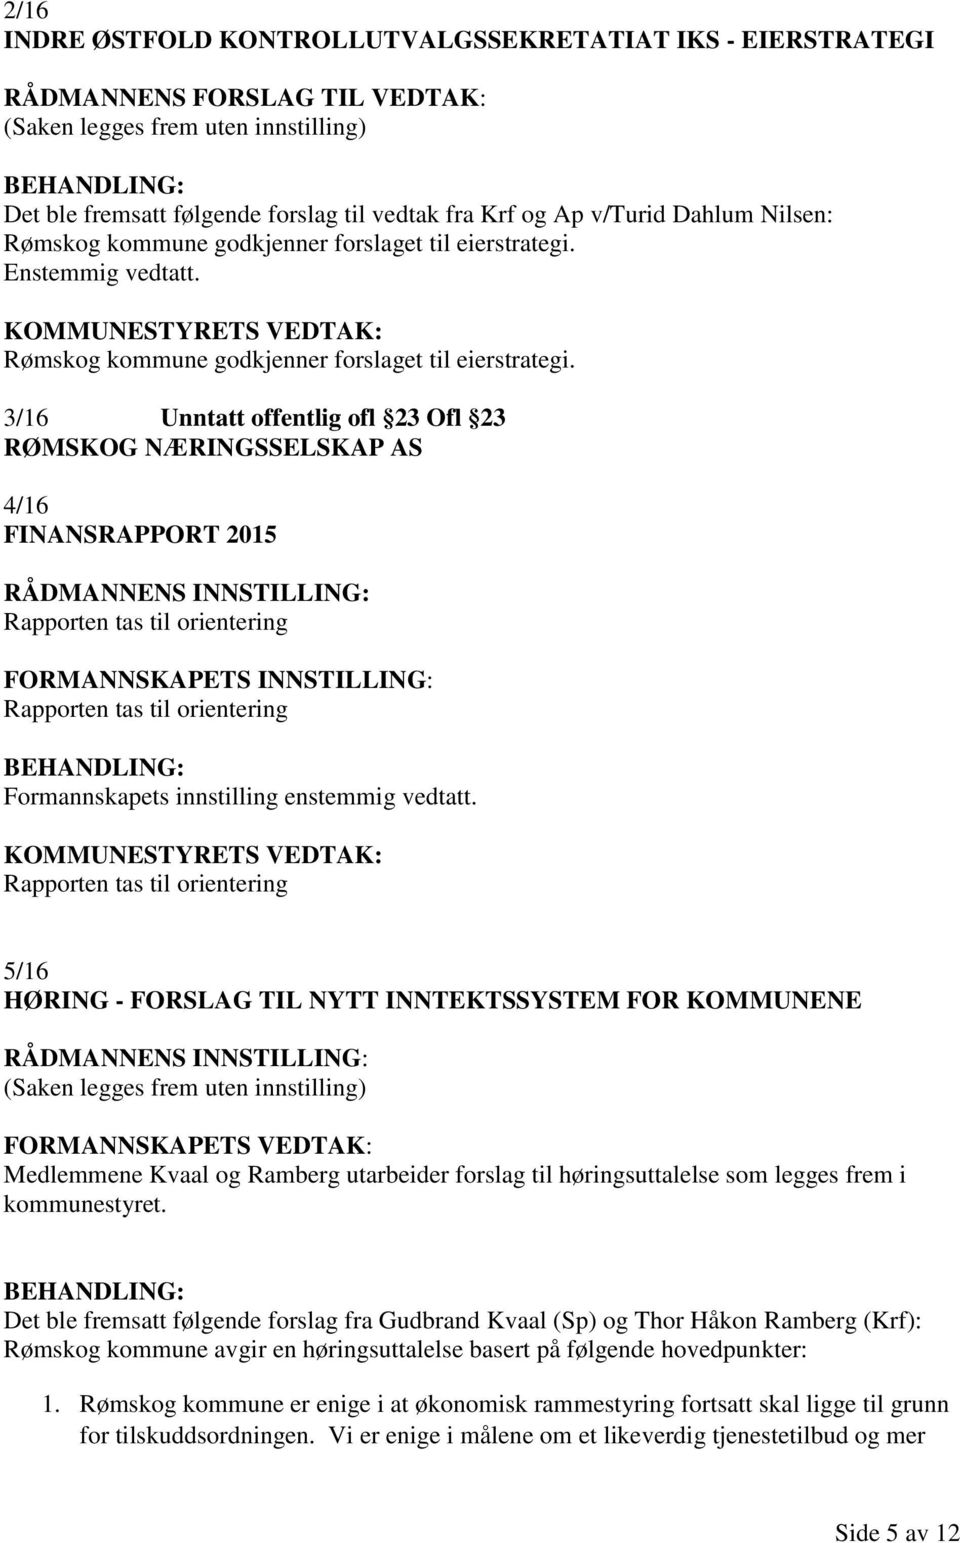 Enstemmig vedtatt. Rømskog kommune godkjenner forslaget til eierstrategi.